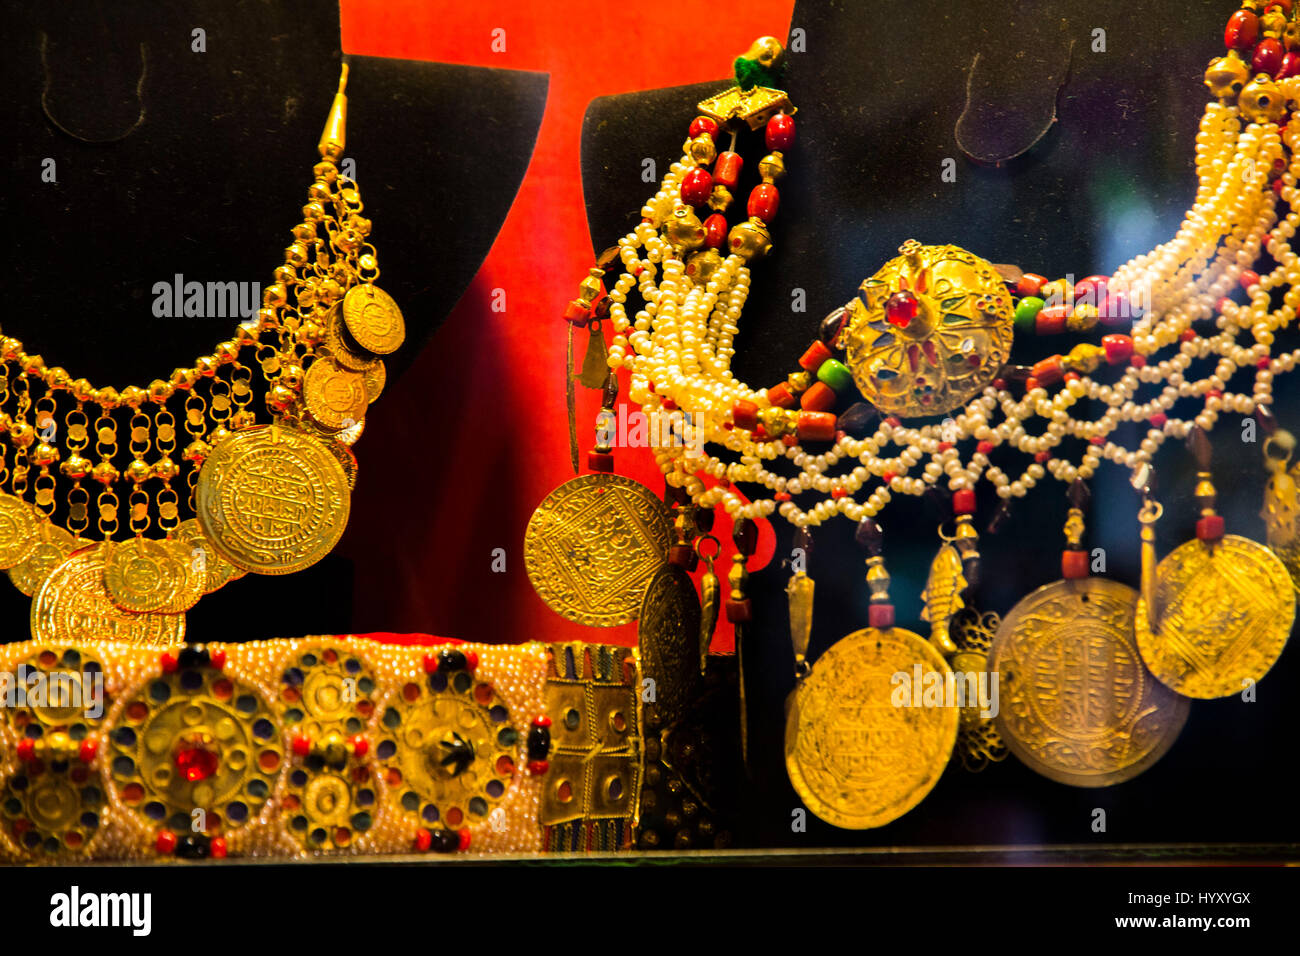 A jewelry display in the Medina of Tunis, Tunisia. Stock Photo